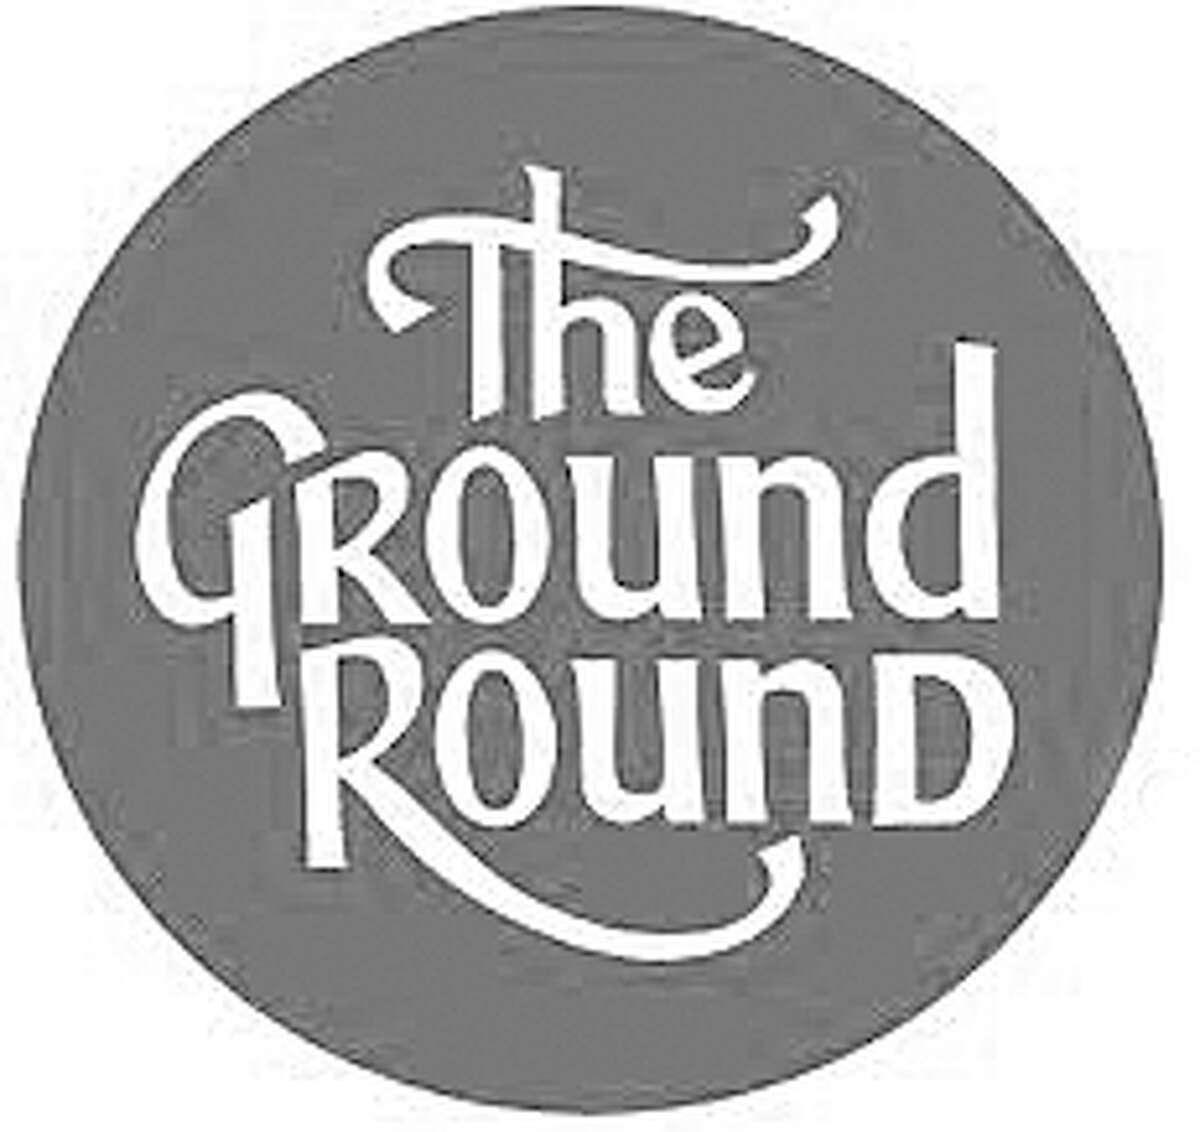 Ground Round logo